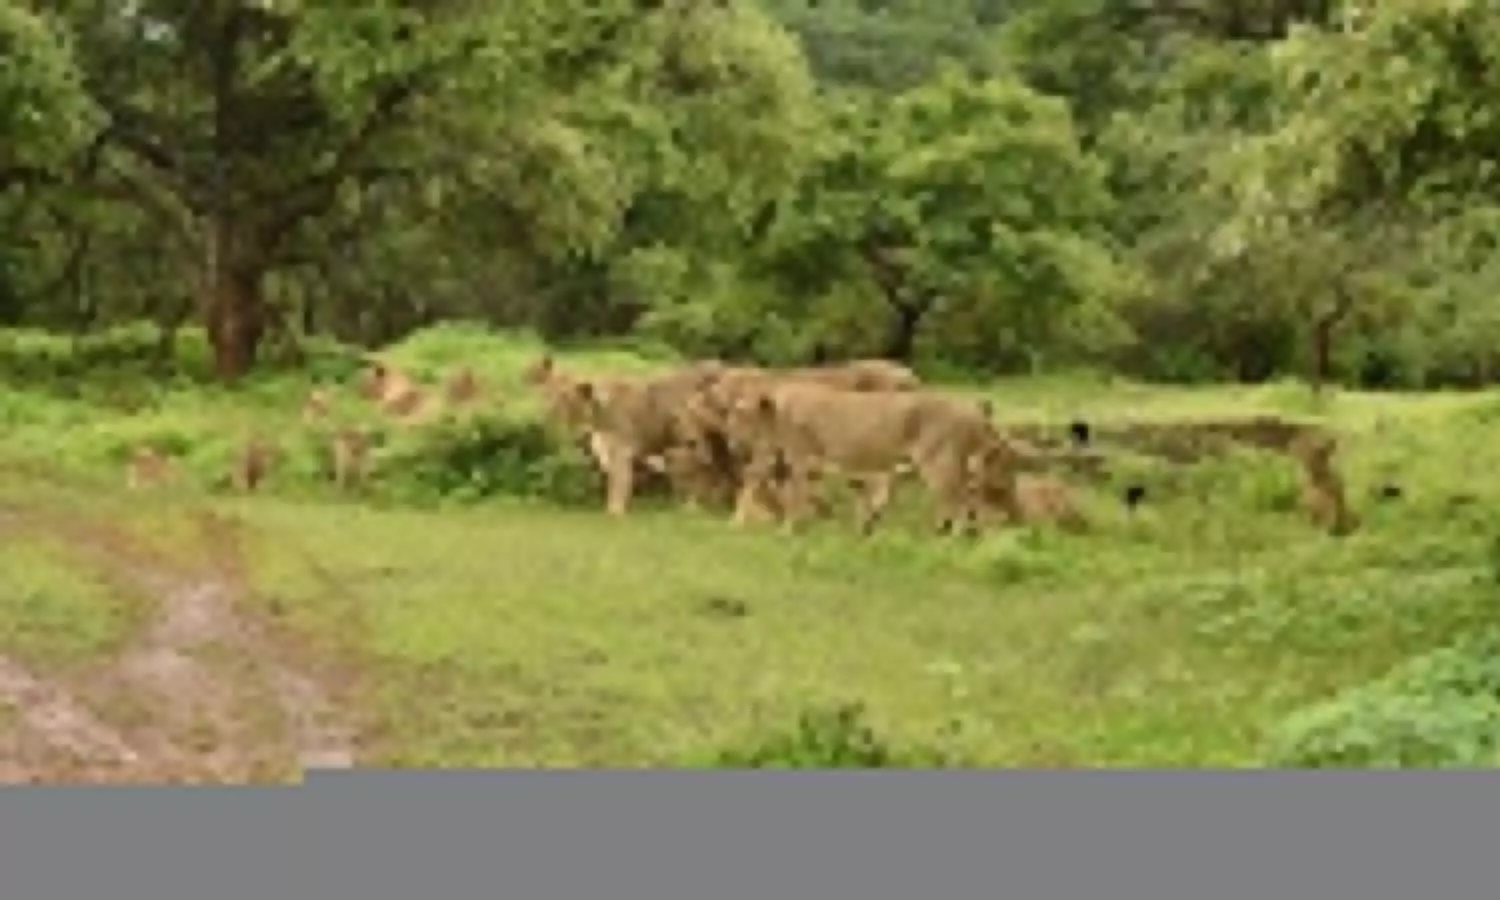 गुजरात के जंगलों में बढ़ रही शेरों की संख्या, 700 पार पहुंचा आंकड़ा